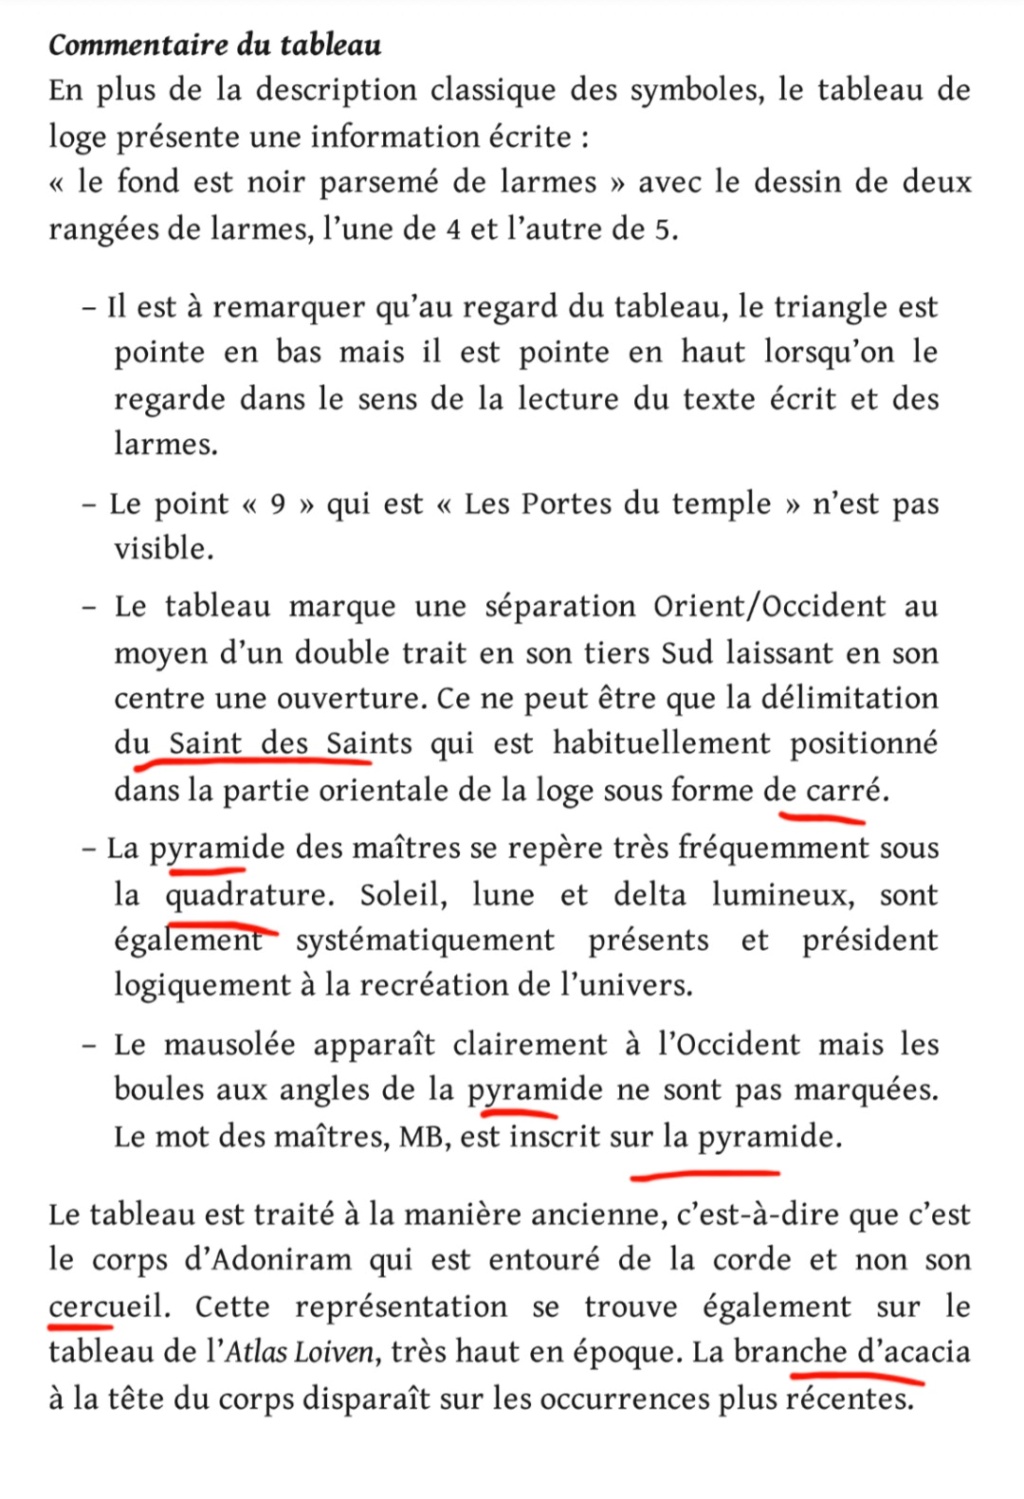 La franc-maçonnerie, la Gnose et le gnosticisme.  - Page 7 Scree678